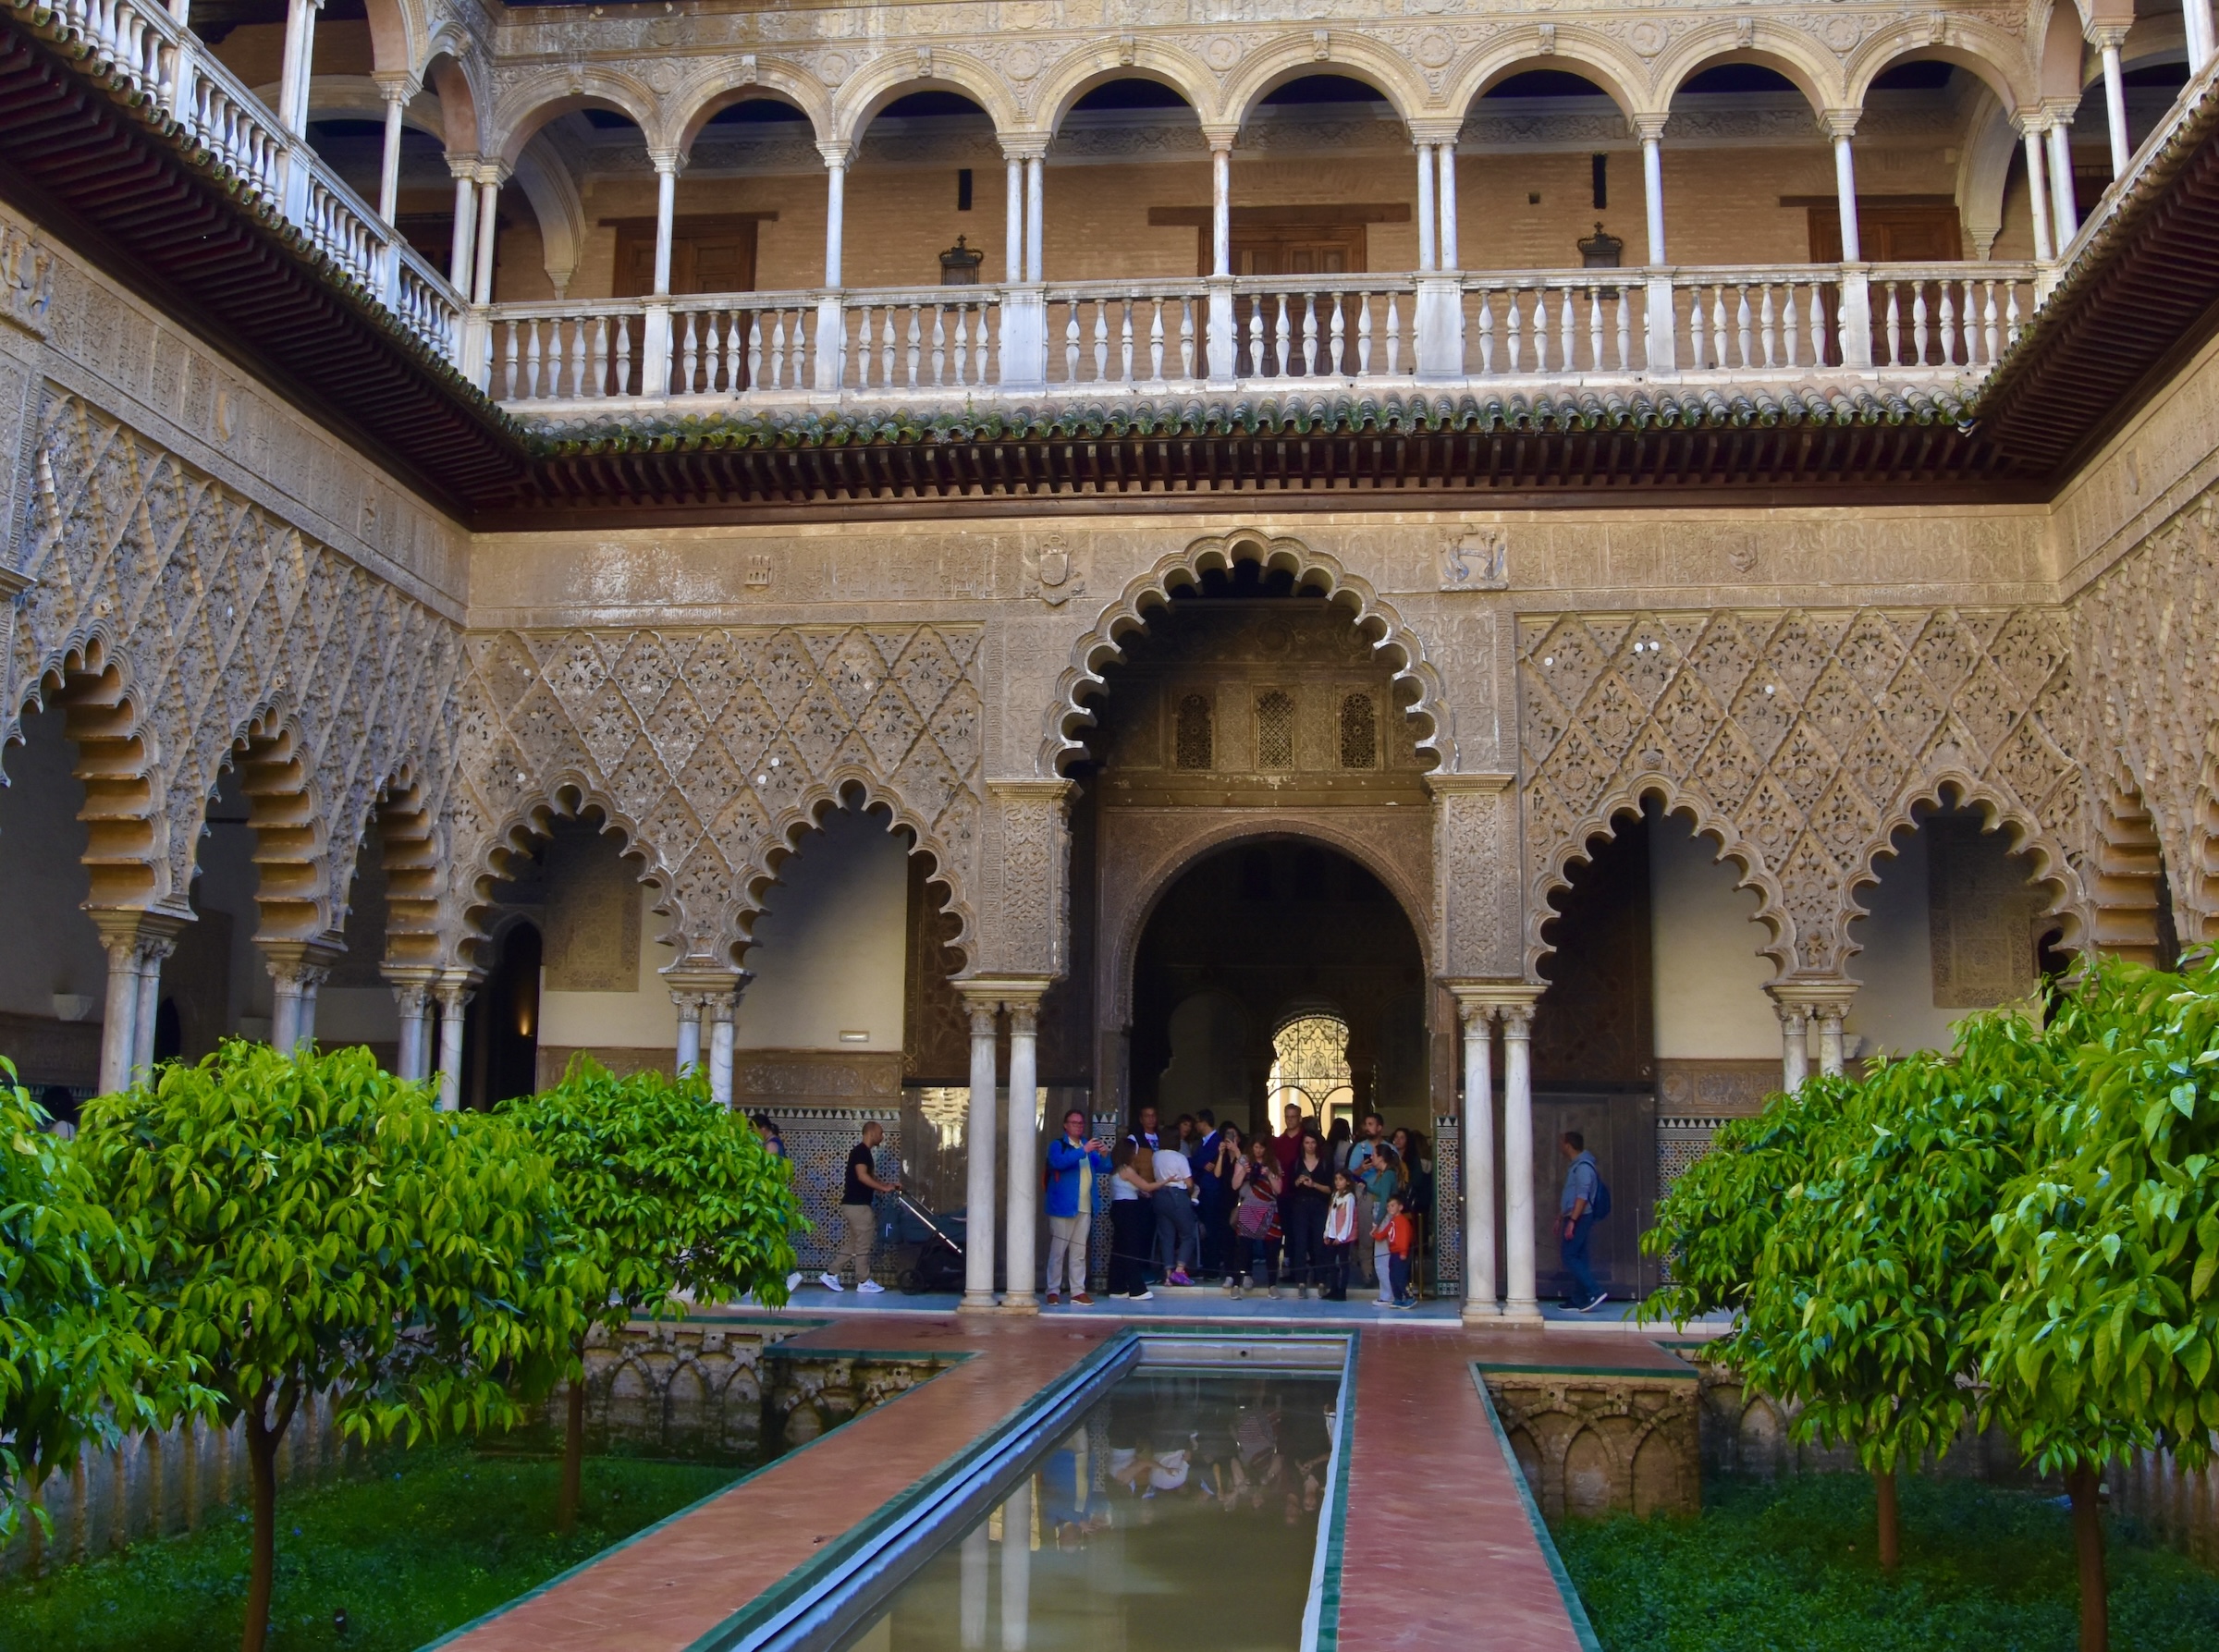 Alcazar Interior, Seville